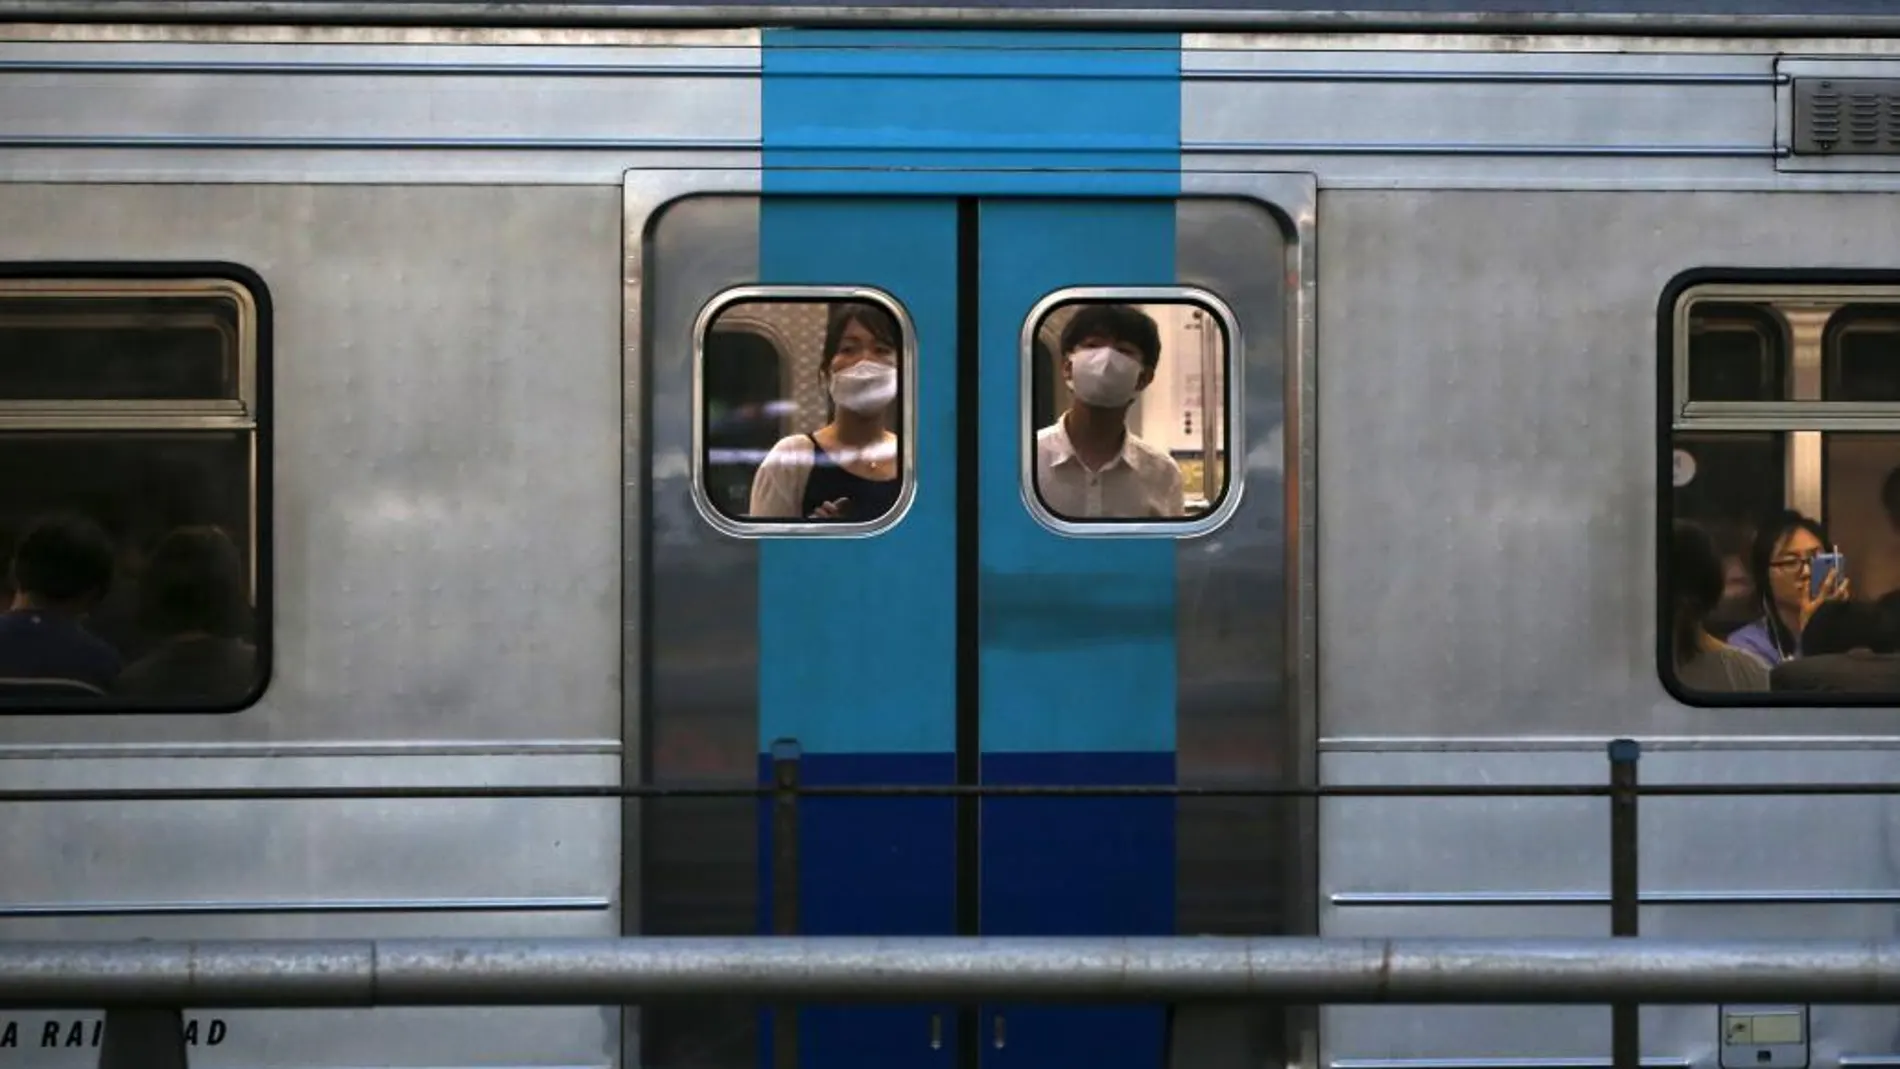 El uso de mascarillas es cada vez más habitual en Corea del Sur para prevenir el contagio del coronavirus. En la imagen, dos pasajeros de un tren subterráneo en Seúl